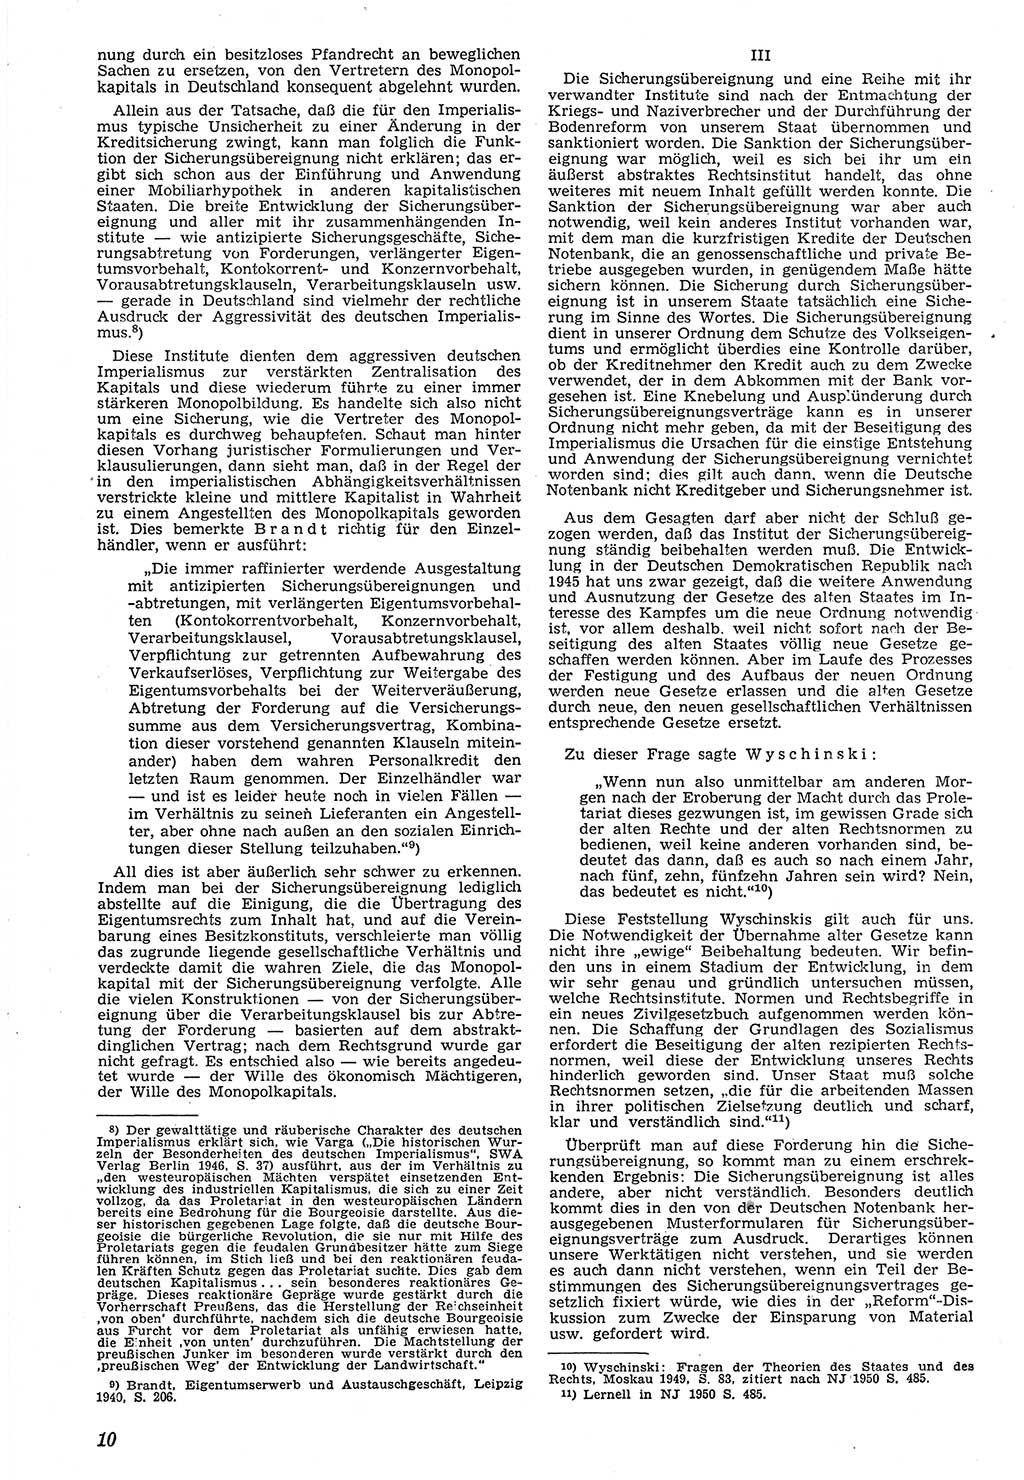 Neue Justiz (NJ), Zeitschrift für Recht und Rechtswissenschaft [Deutsche Demokratische Republik (DDR)], 7. Jahrgang 1953, Seite 10 (NJ DDR 1953, S. 10)